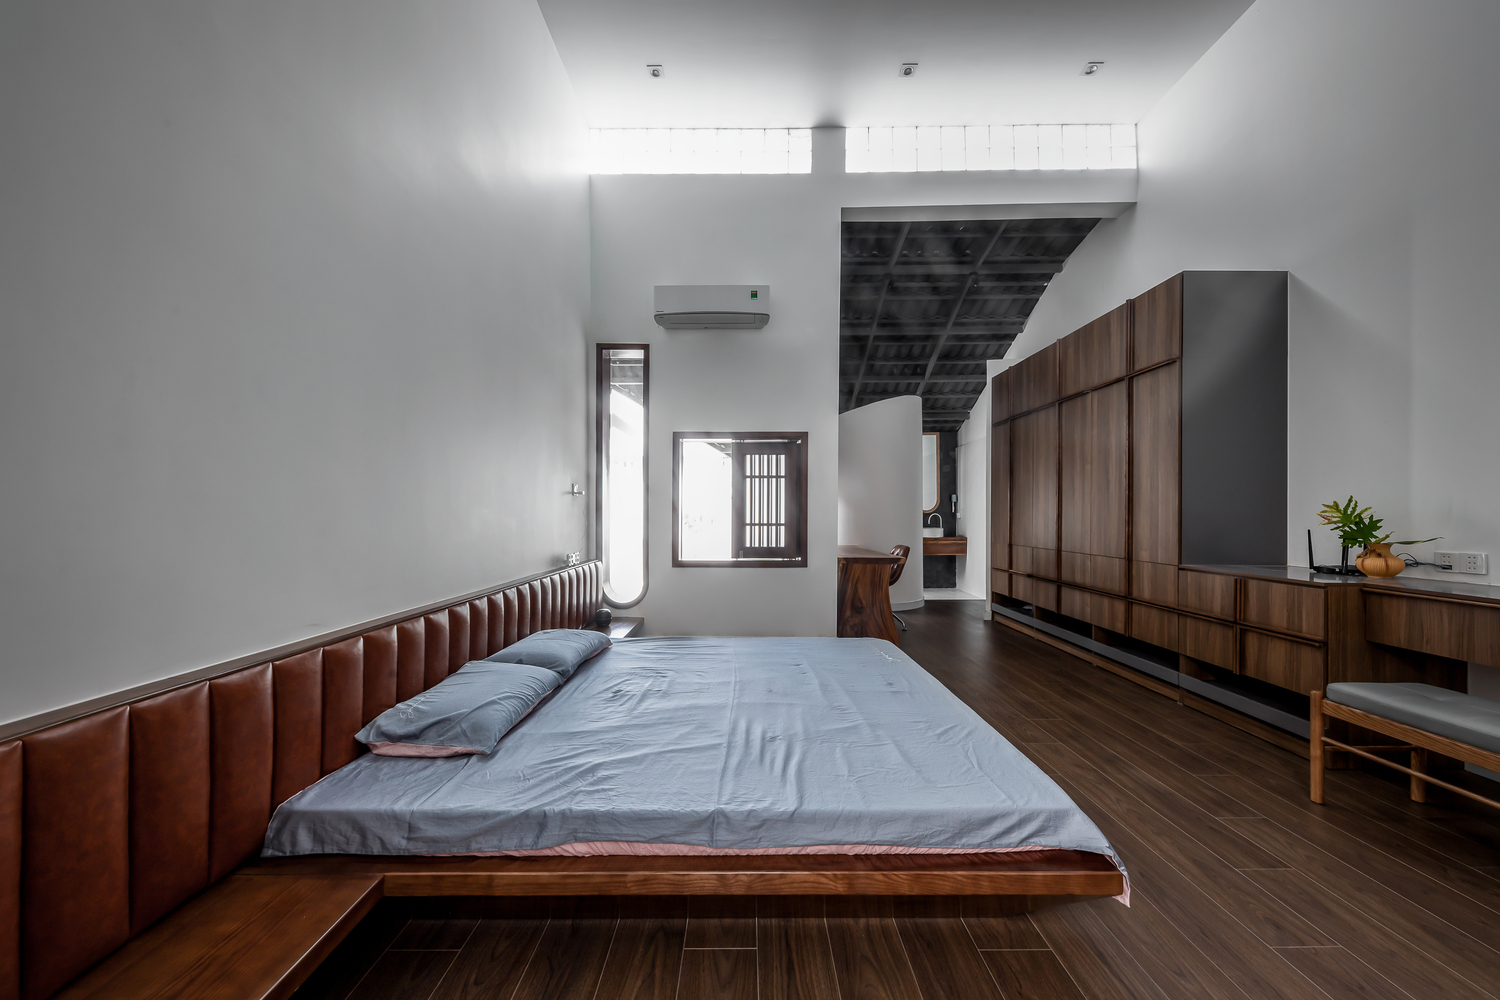 Các phòng ngủ trong nhà ống được thiết kế theo phong cách tối giản, tạo cảm giác thư thái, dễ chịu cho người dùng.